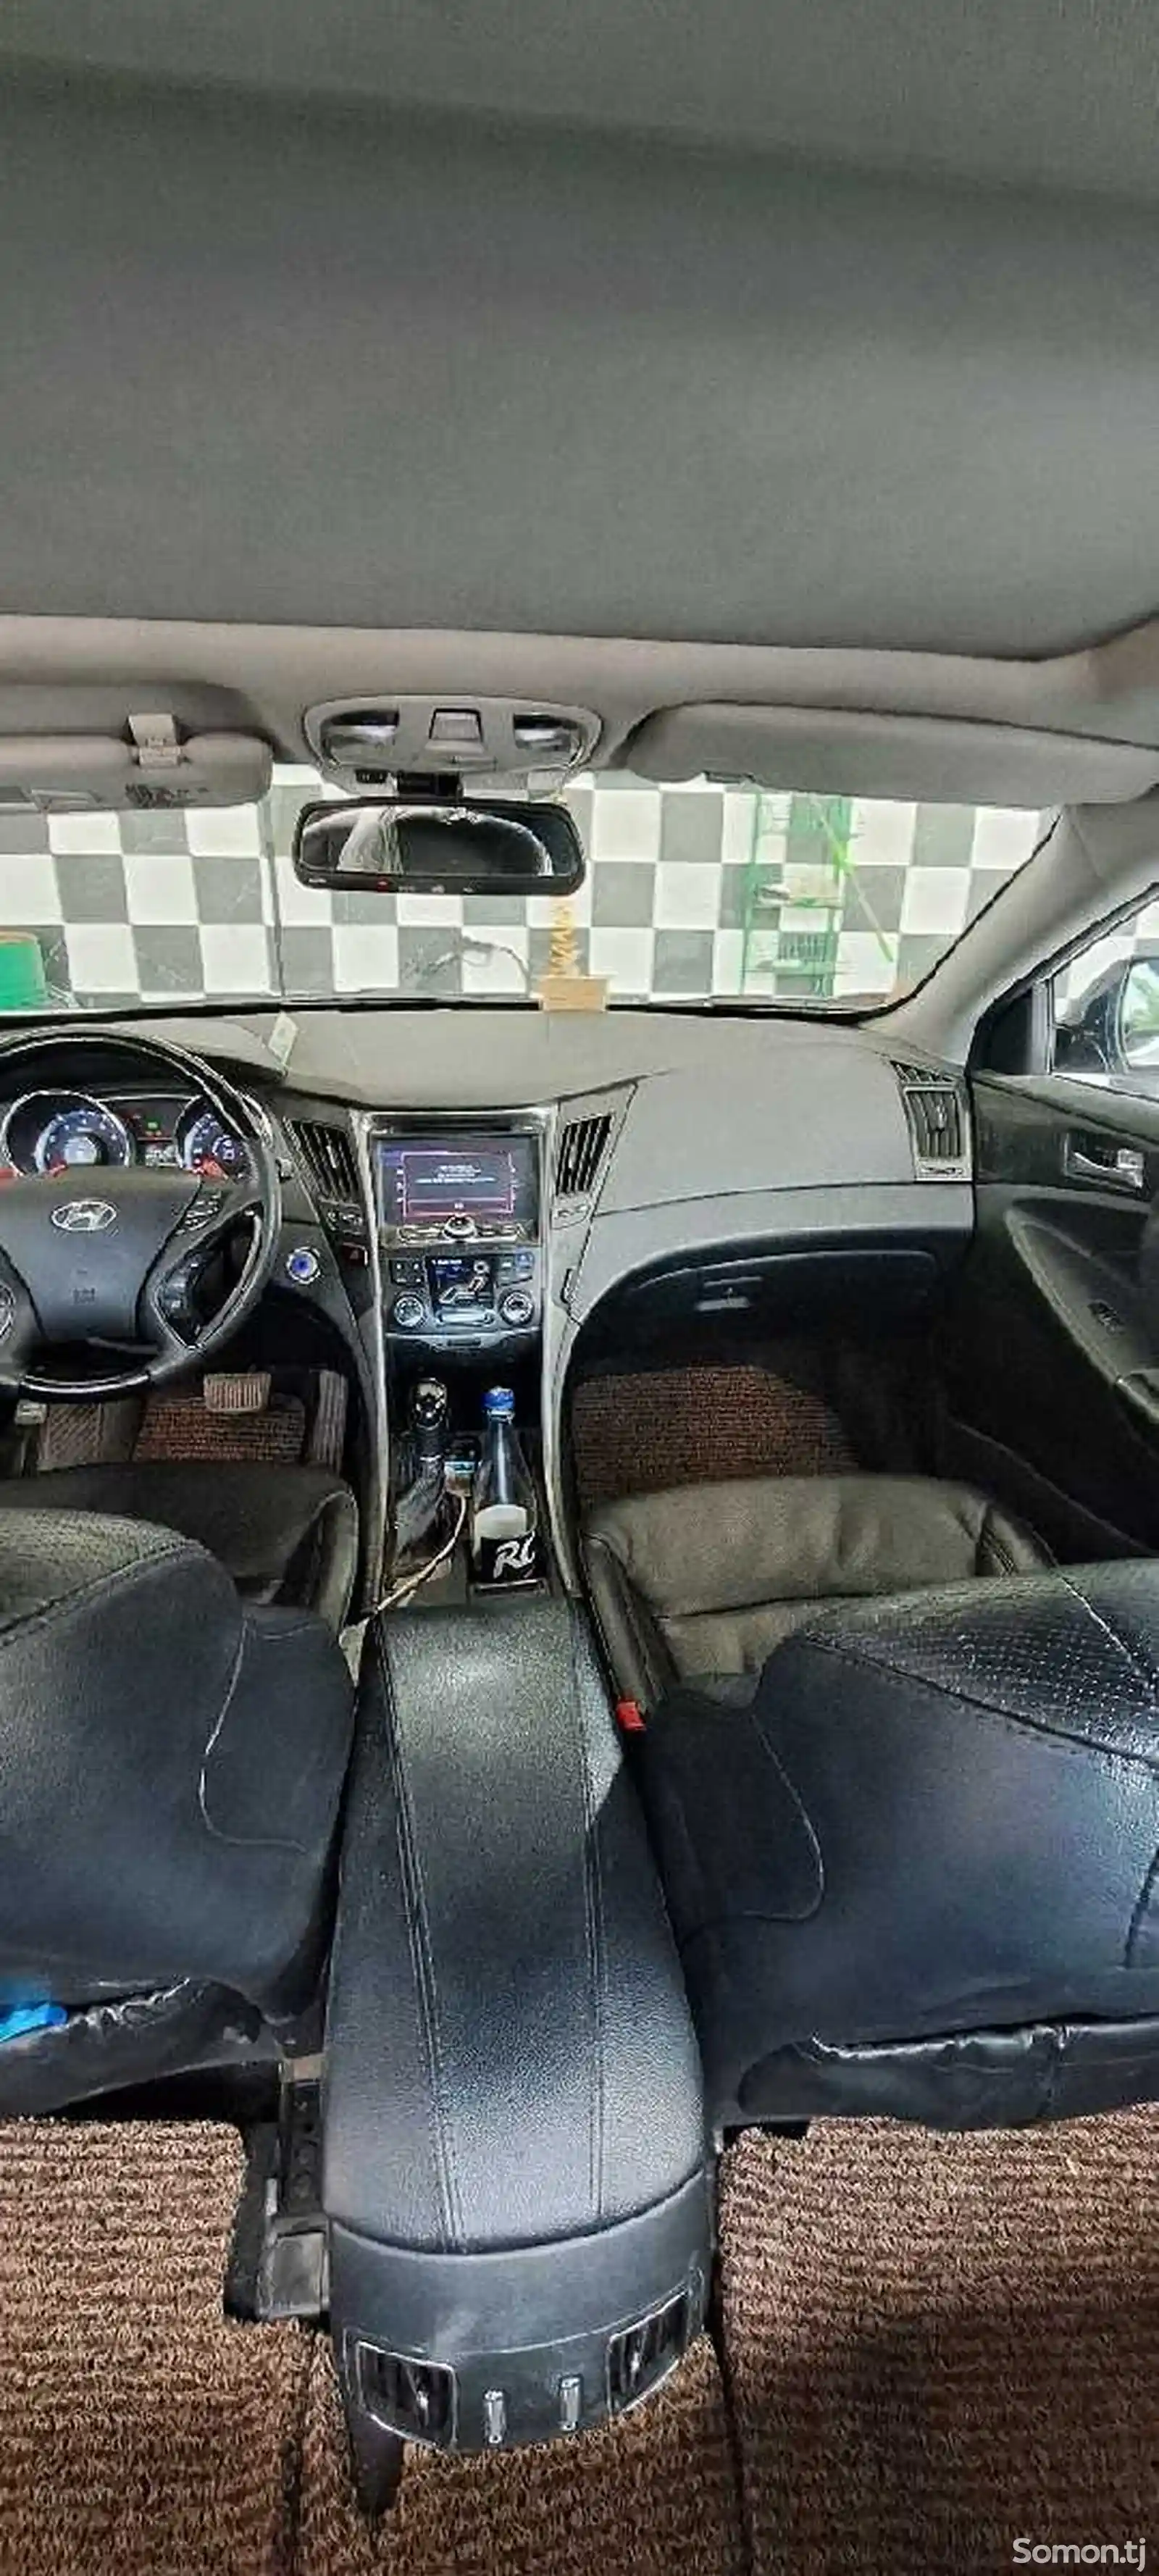 Hyundai Sonata, 2012-2